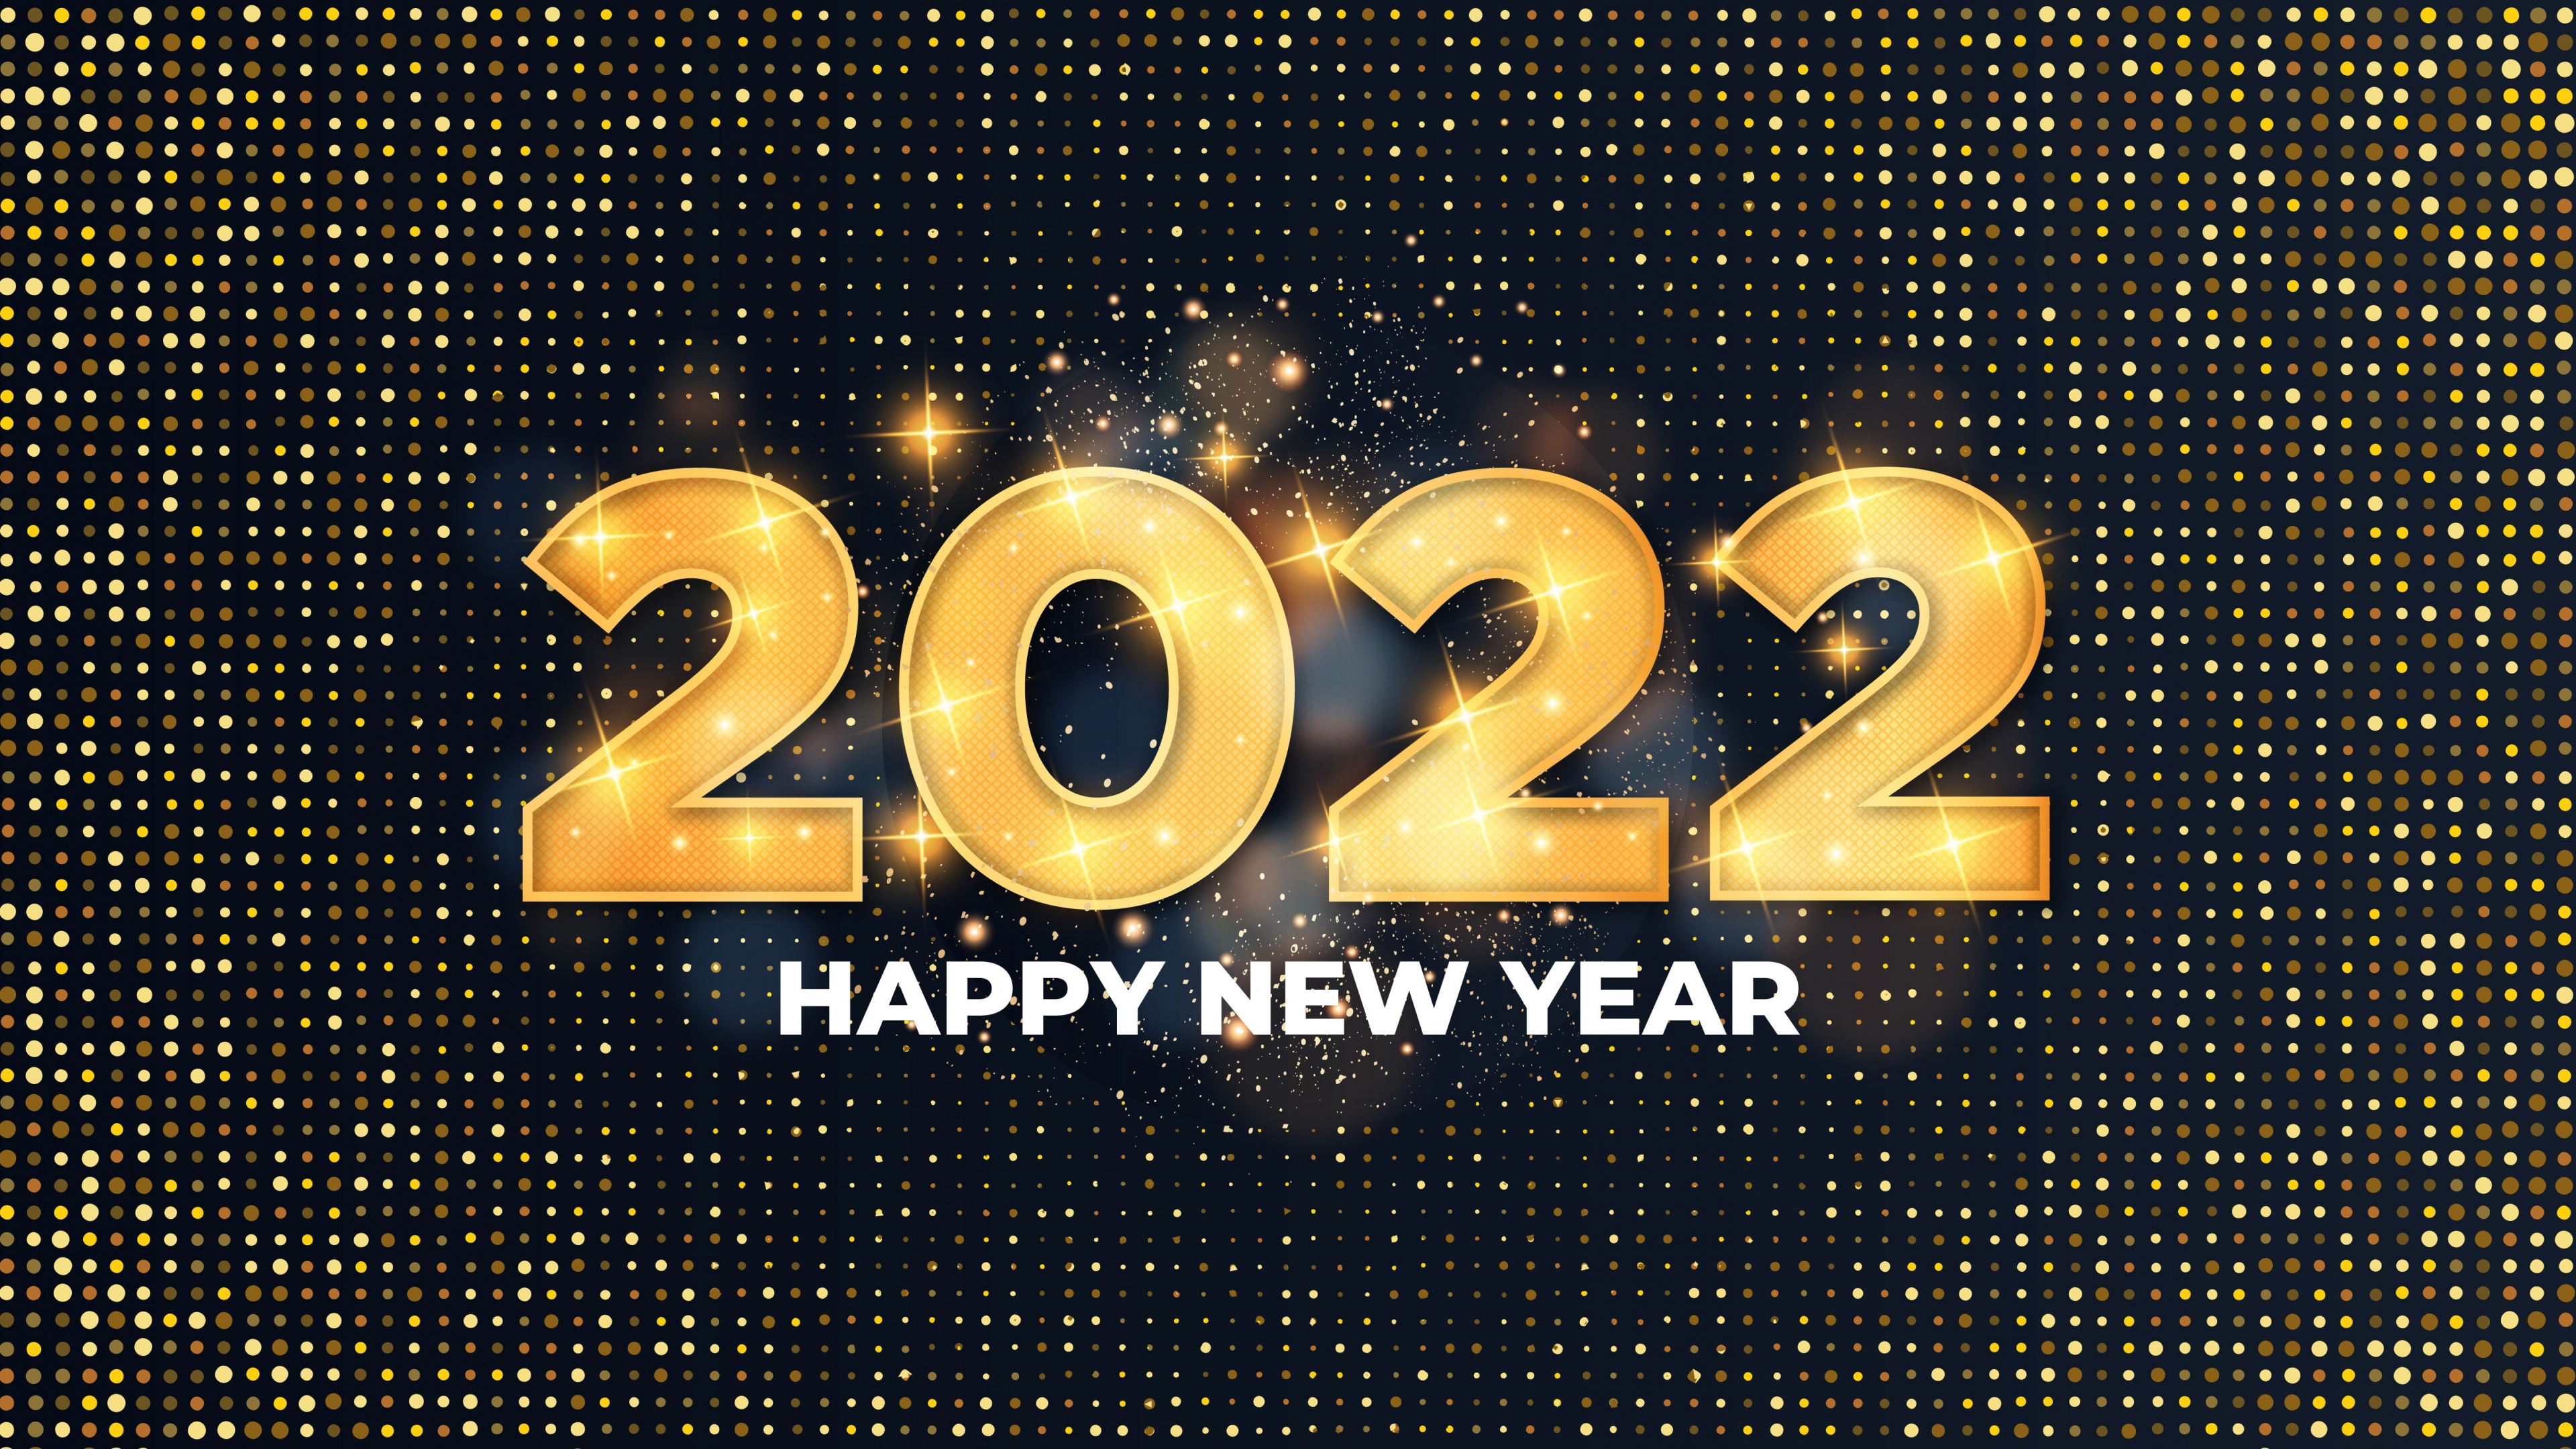 Chào mừng năm mới 2022 với điểm nhấn đặc biệt là hoạt động kỷ niệm, pháo hoa và vàng. Hãy cùng chào đón năm mới bằng những hình ảnh đẹp tuyệt vời, những phút giây tuyệt vời và lộng lẫy cùng màu vàng rực rỡ.